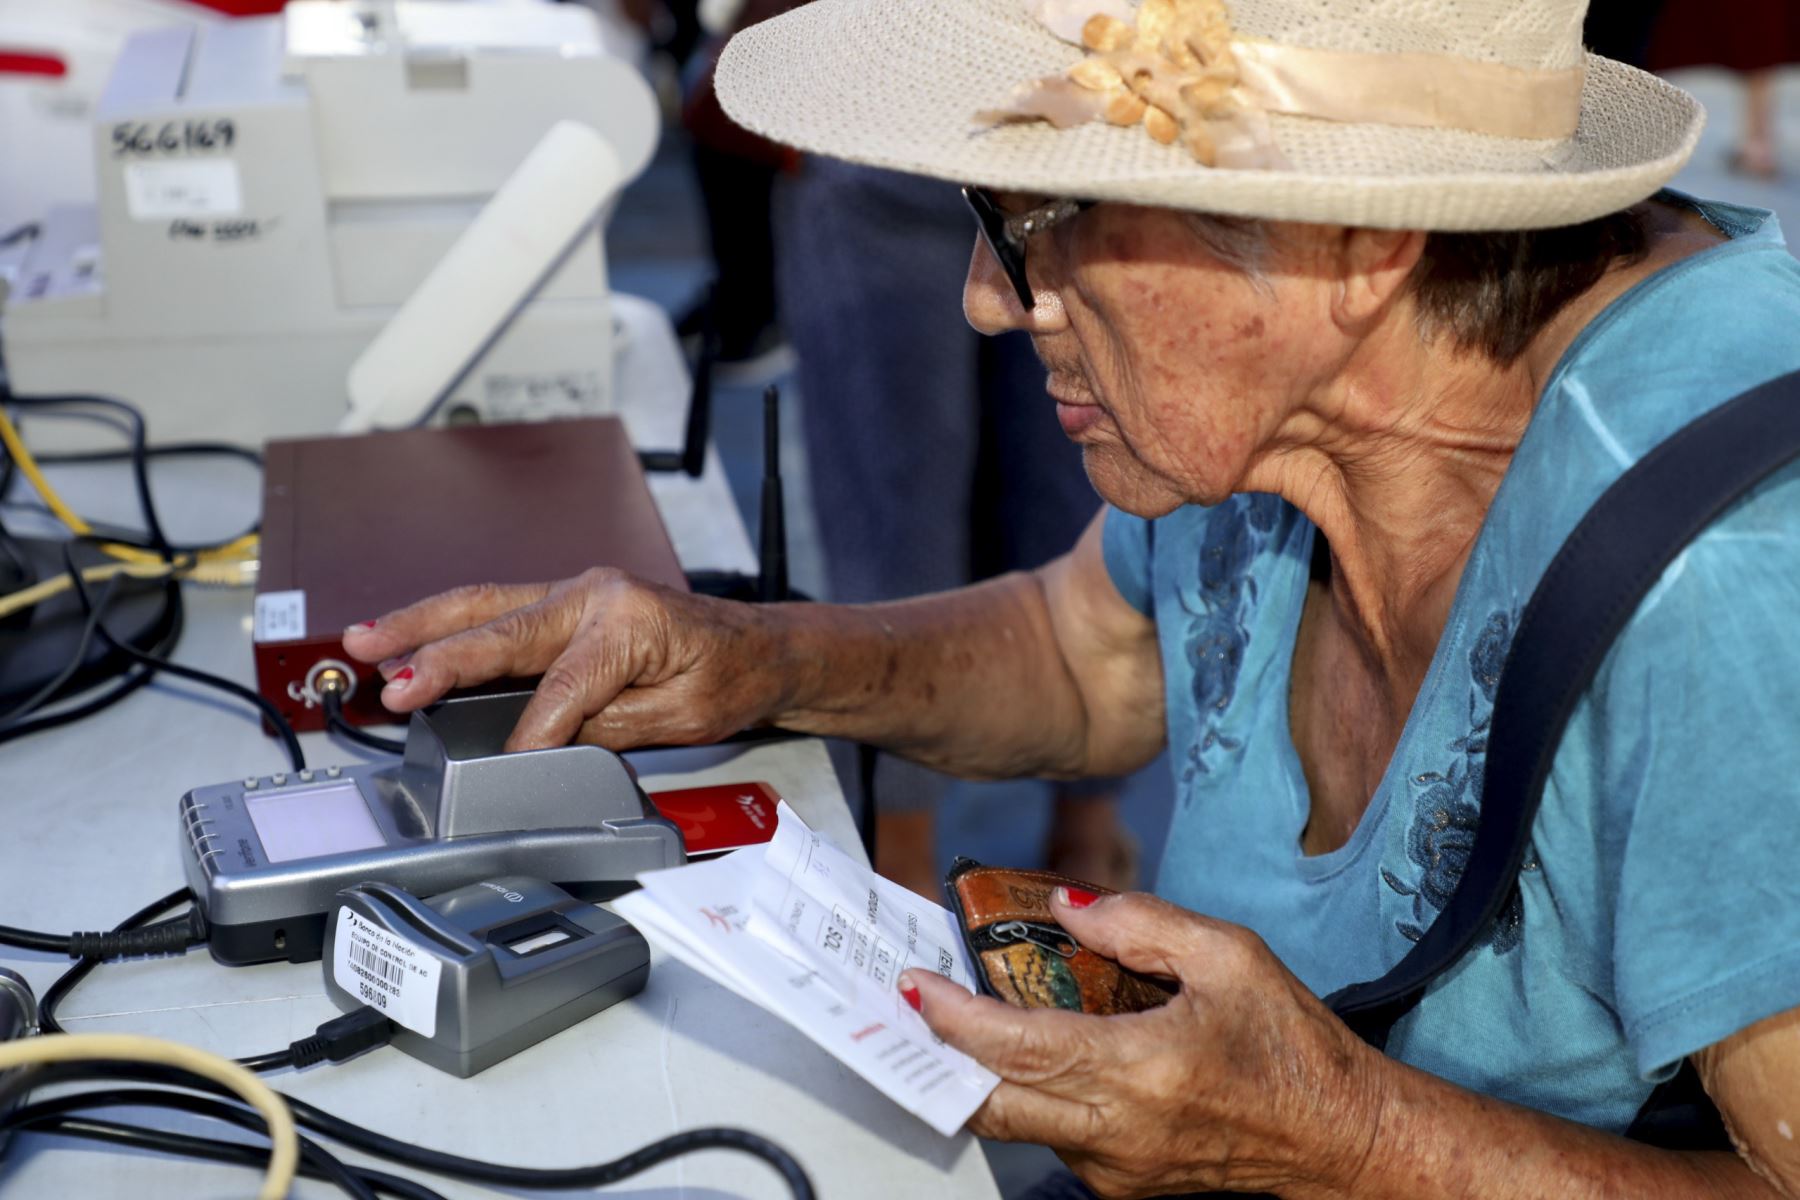 El programa Pensión 65 está modernizando sus servicios y a la fecha hay más de 170,000 personas cobrando con sus tarjetas de débito. Foto: ANDINA/Pensión 65